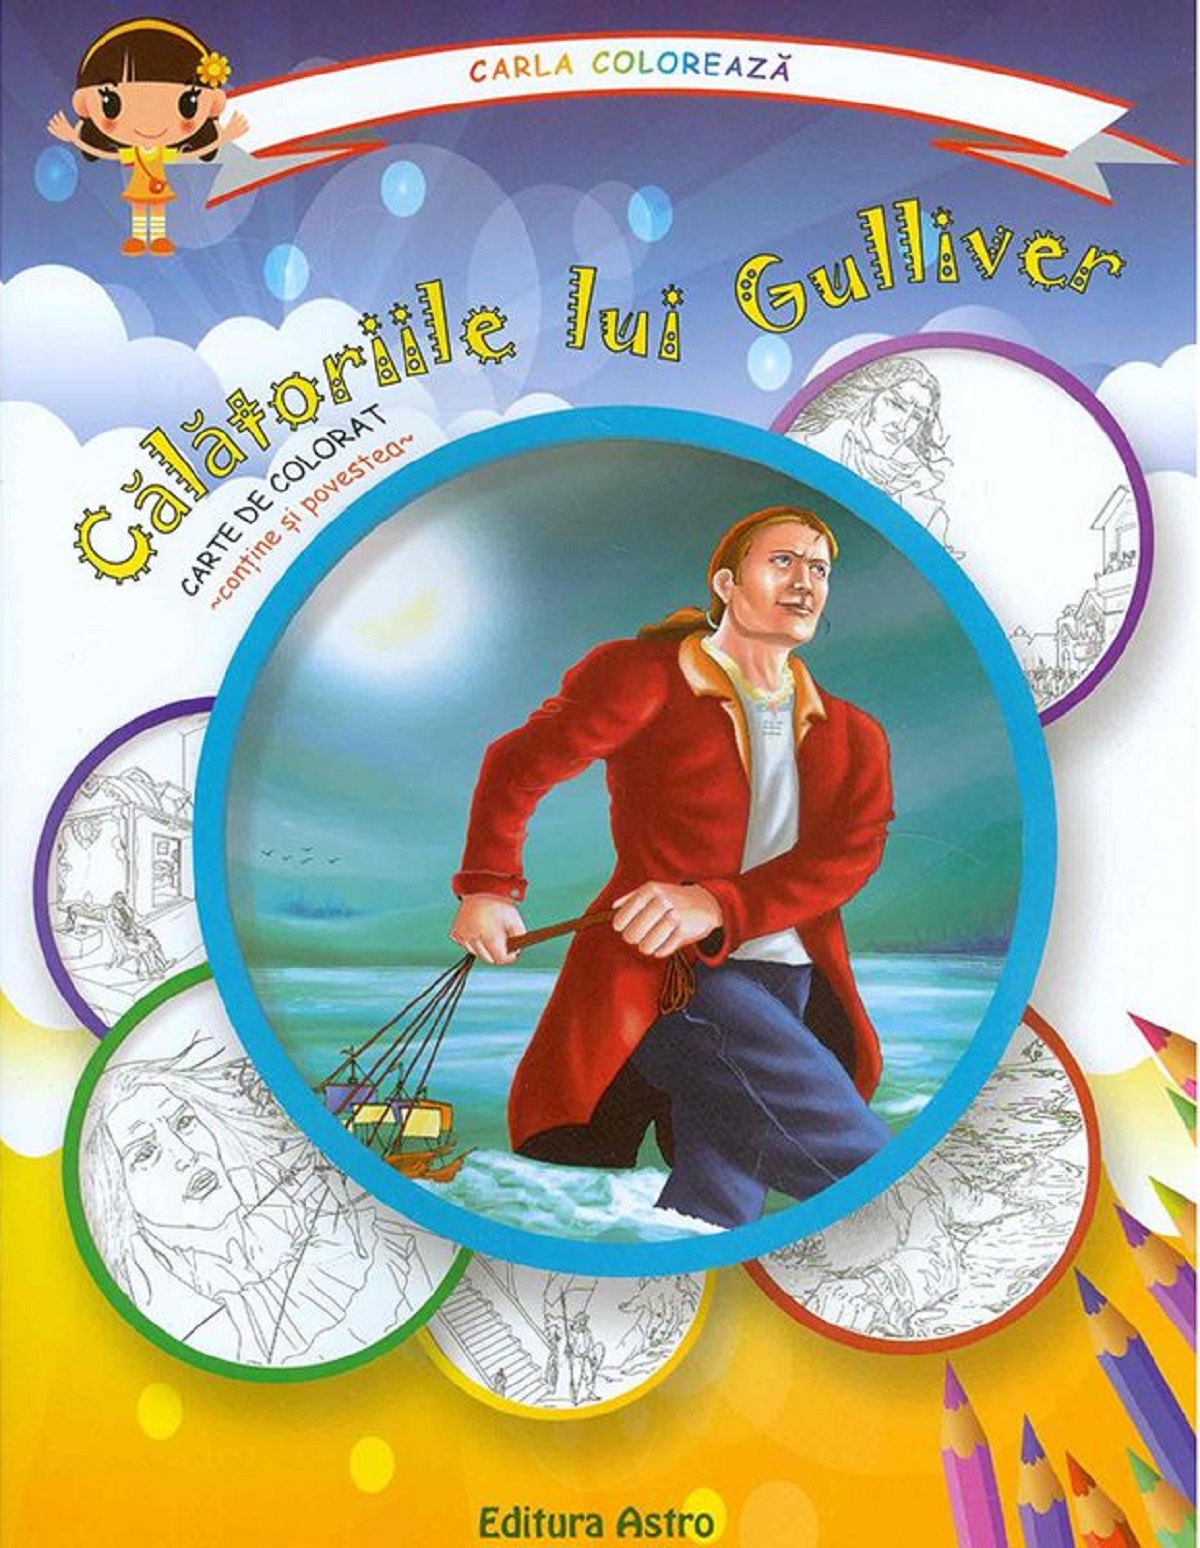 Calatoriile lui Gulliver: carte de colorat + poveste. Carla coloreaza